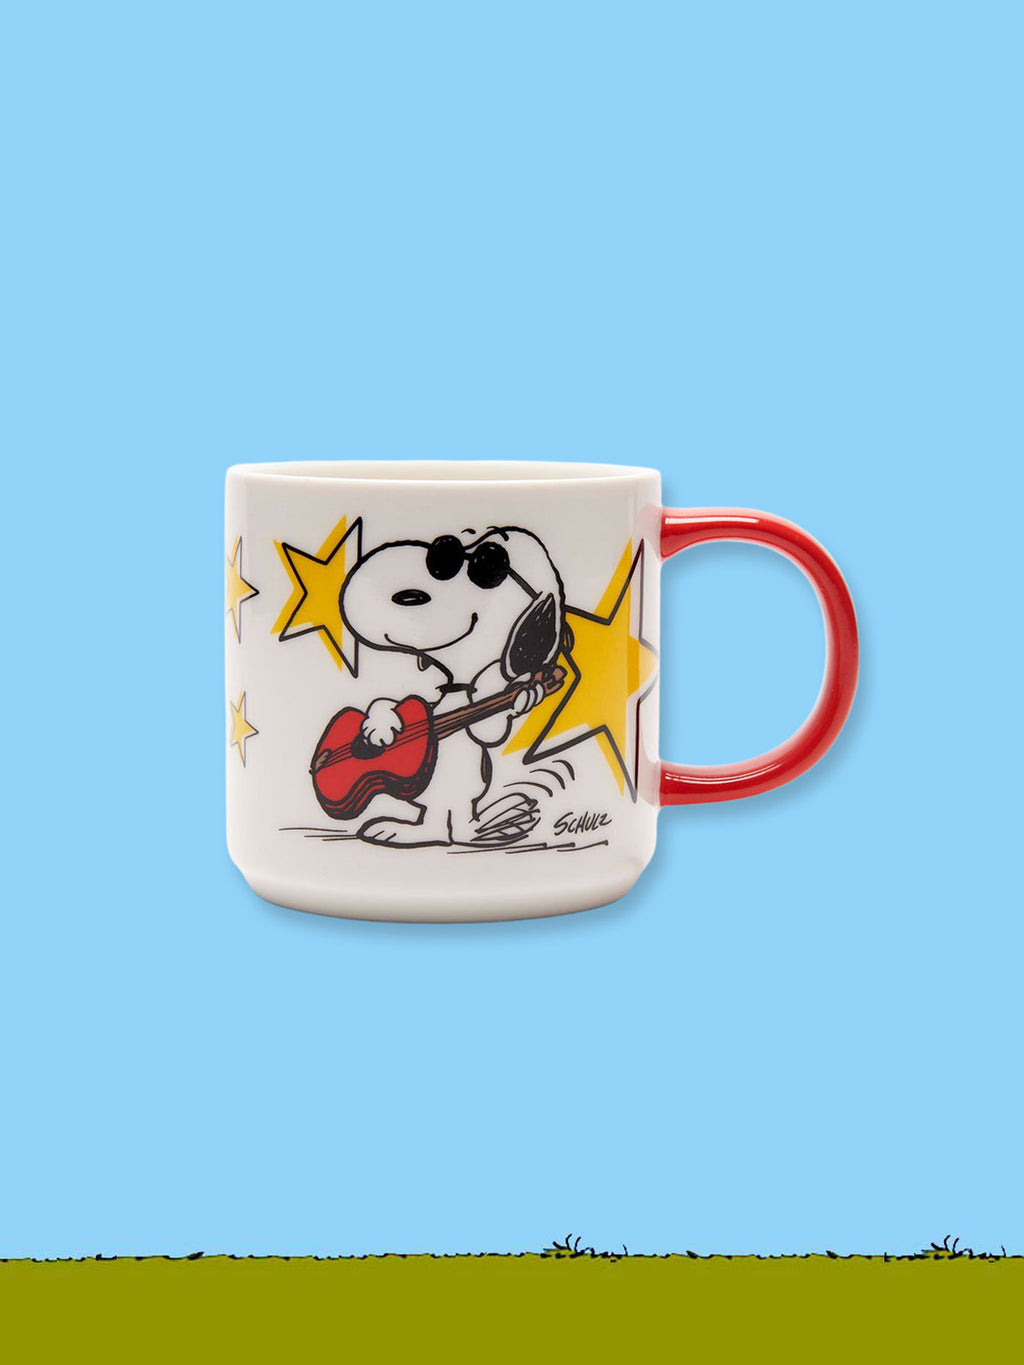 Peanuts Ceramic Mug - Rock Star Mug